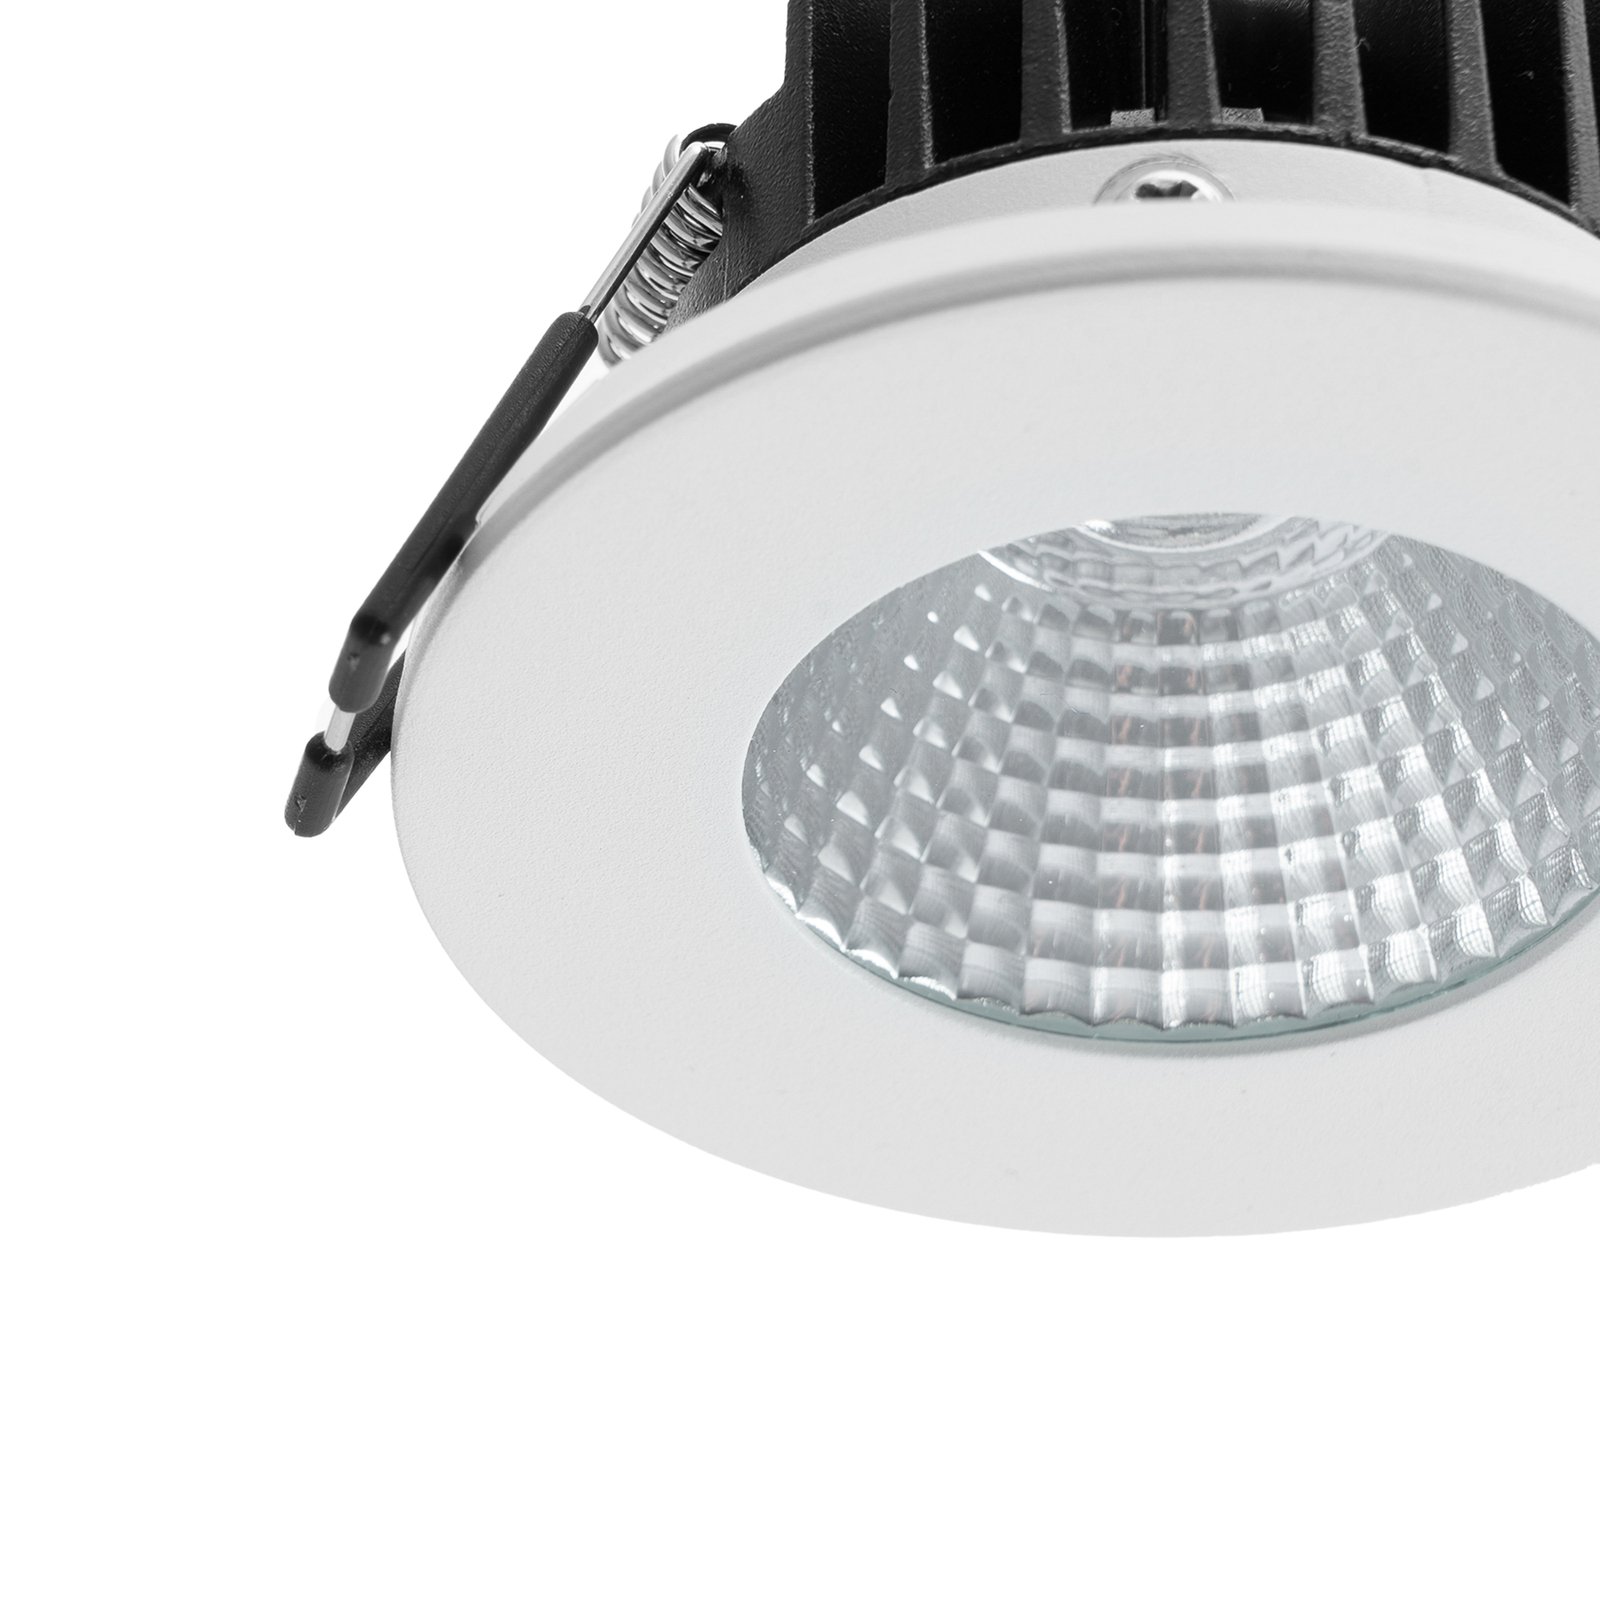 Arcchio LED stropné svietidlo Lirin, biele, 3 000 K